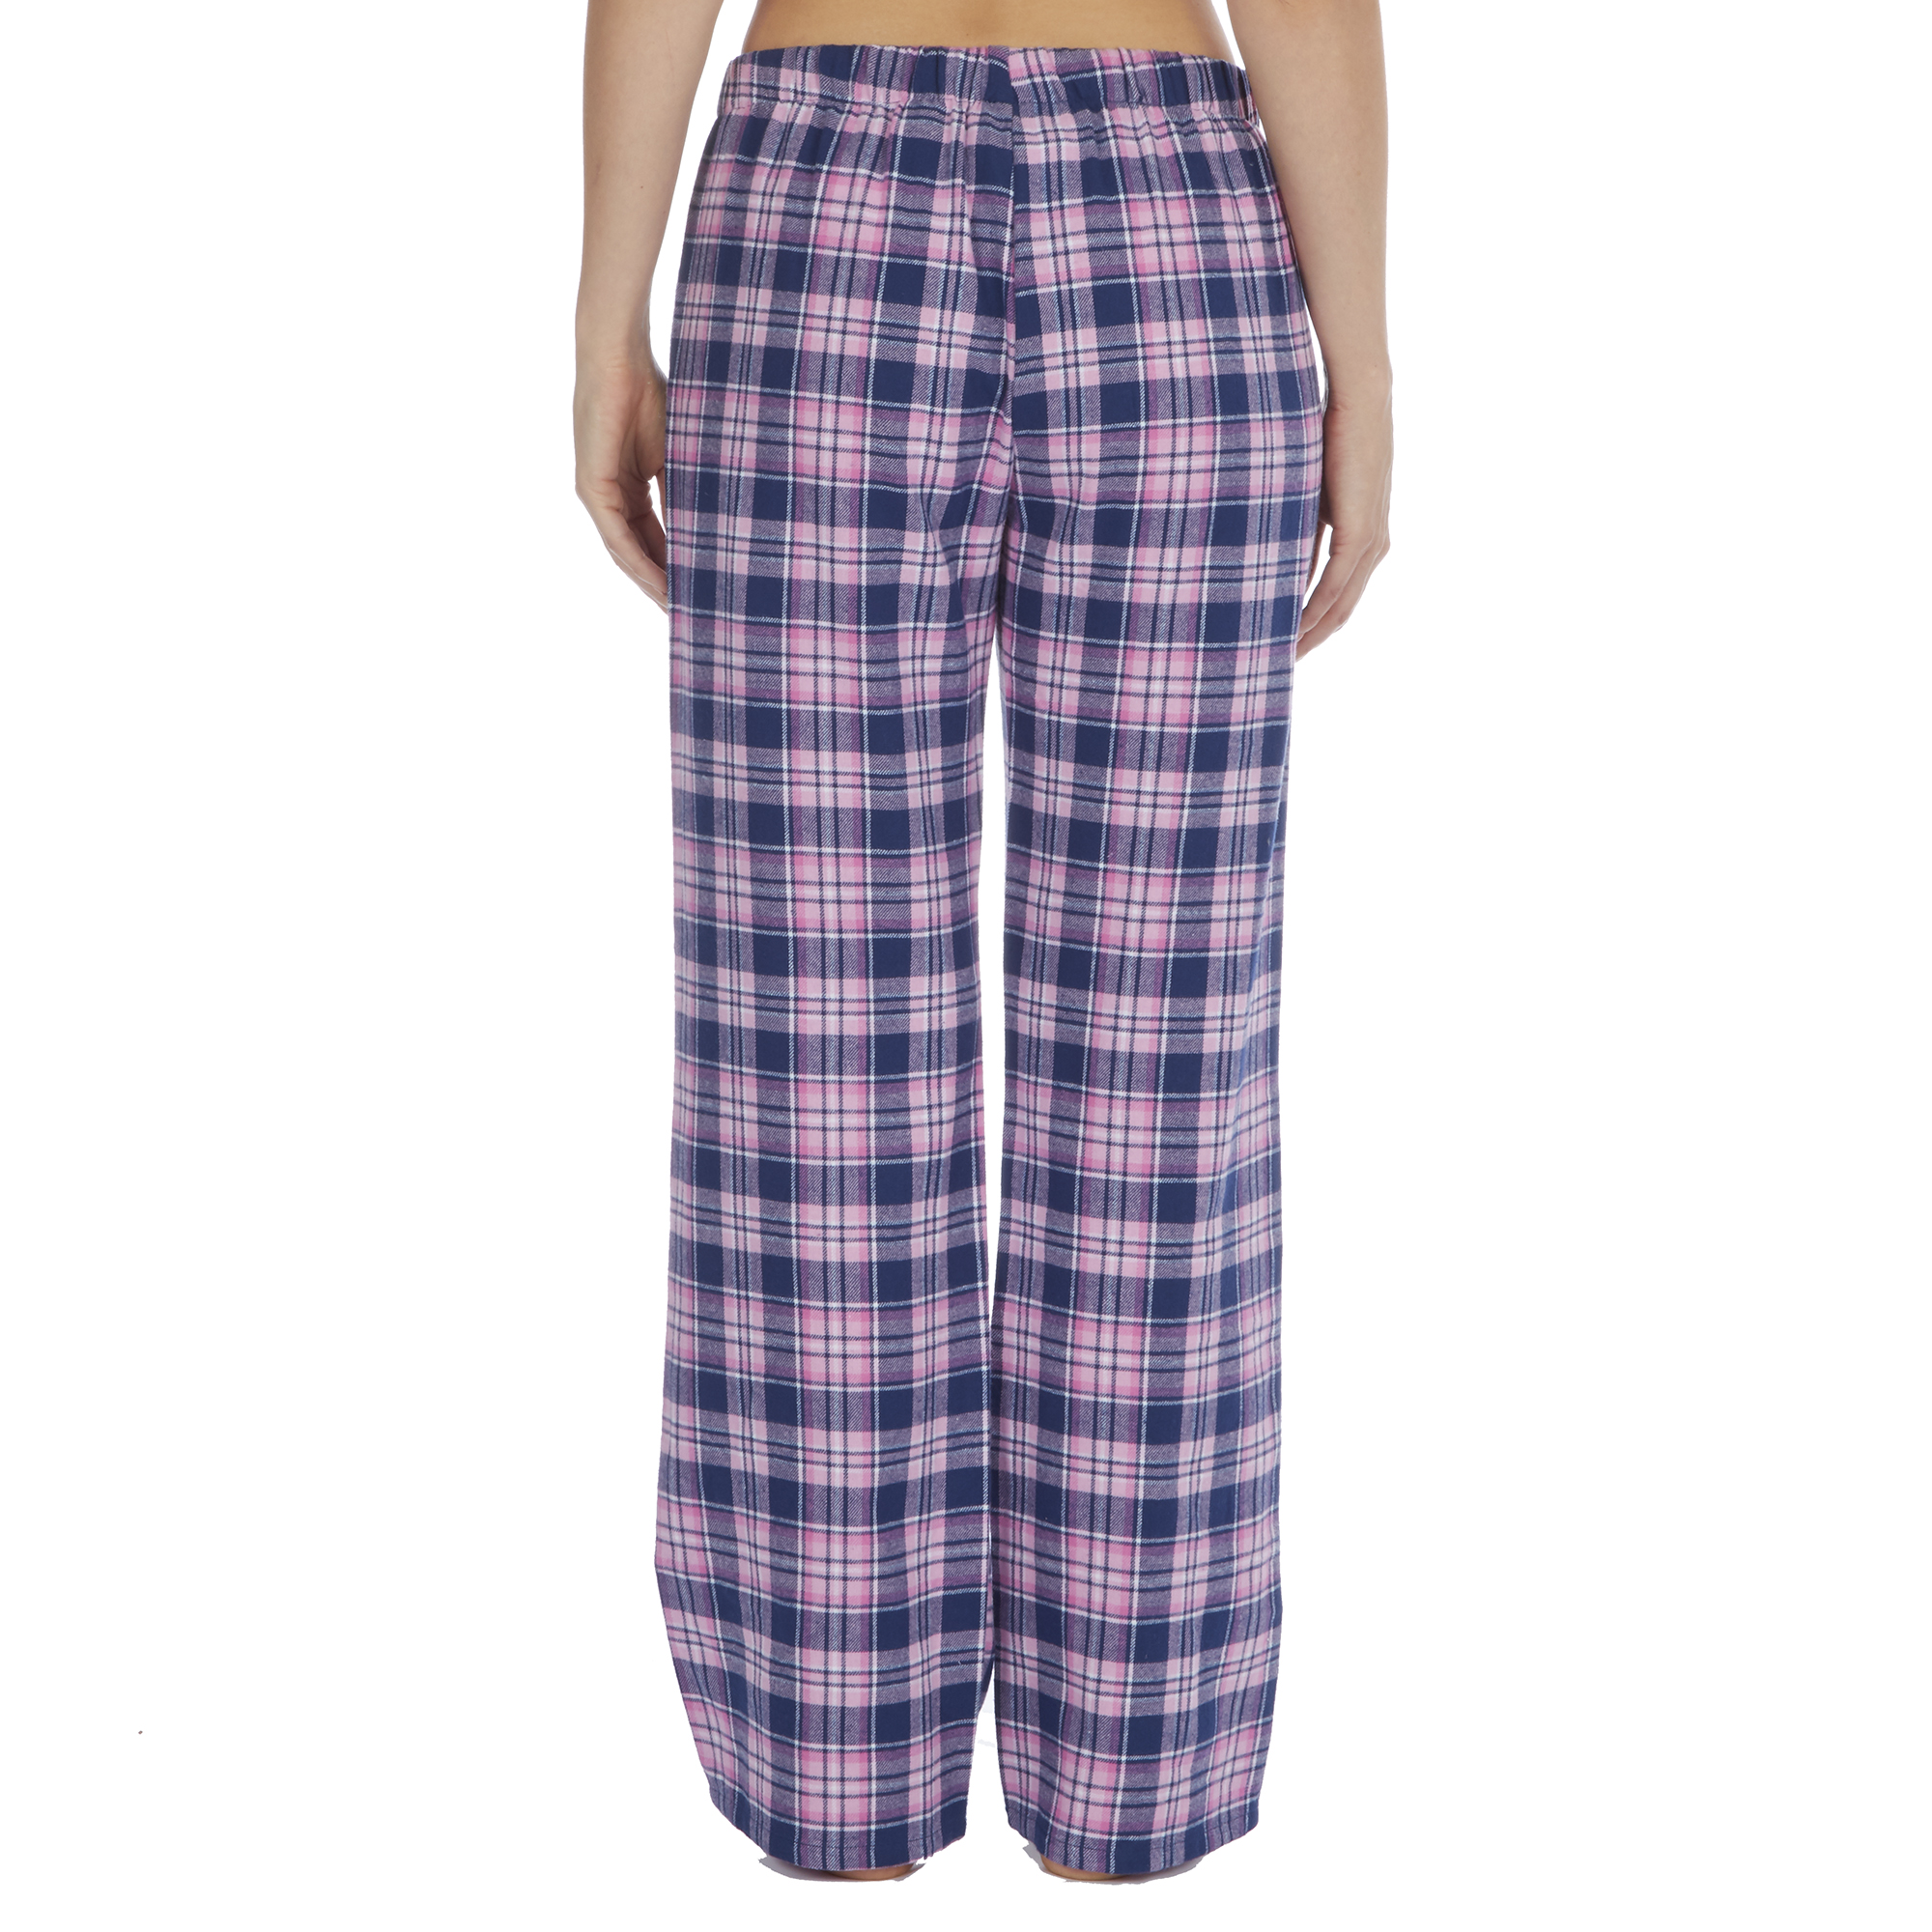 Pijamas Y Batas Senoras Para Mujer Pijama Pantalones Ropa De Dormir Del Patron De Cuadros De Algodon Franela Termico Lounge Bulldoggin